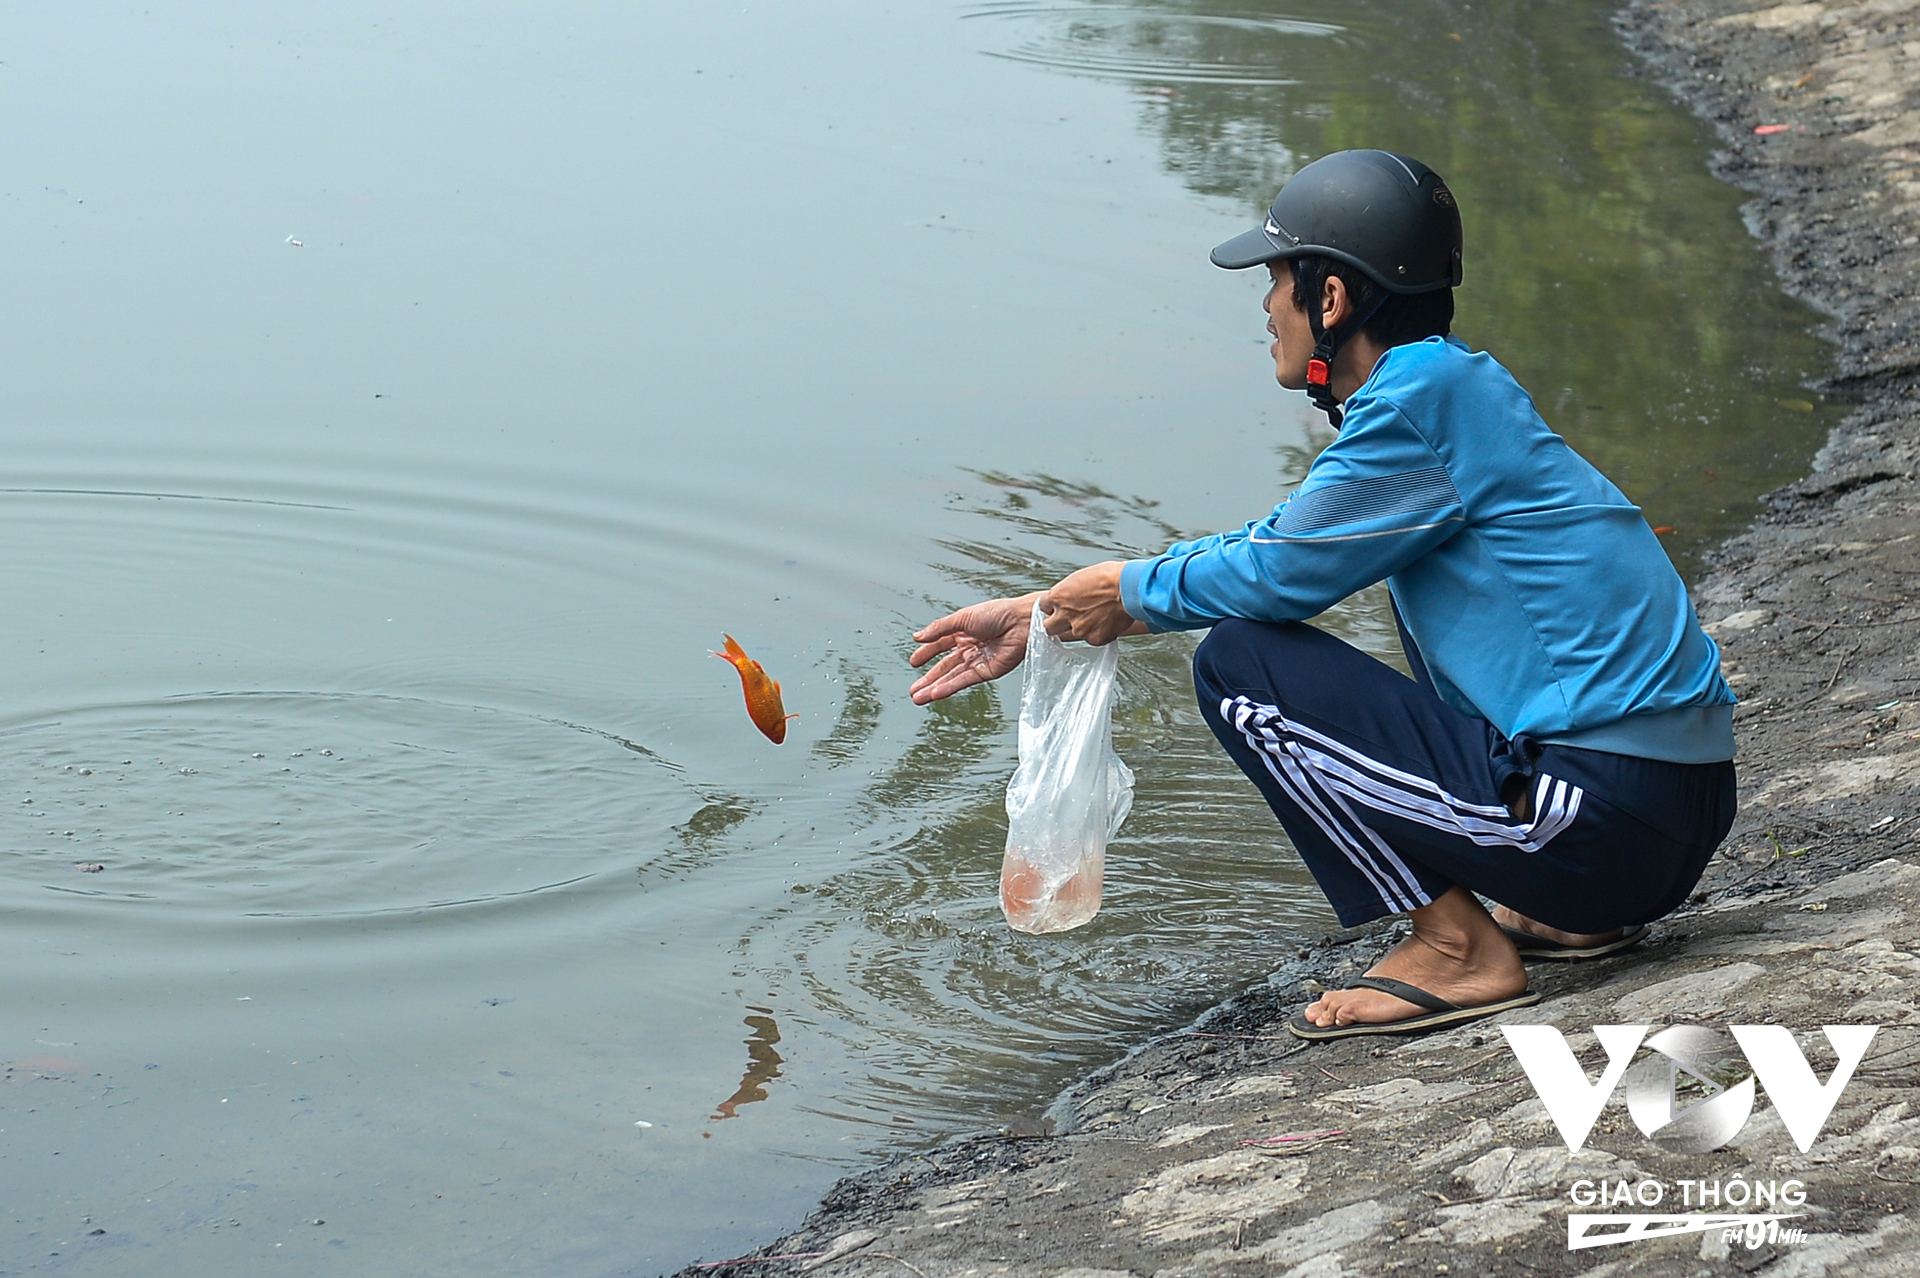 Khác với hành động đẹp, thả cá nhẹ nhàng, ở hồ Hoàng Cầu vẫn xuất hiện tình trạng một số người thả cá chép một cách phũ phàng. Hất chú cá từ trên tay khiến chú cá xuống nước trong tư thế cắm đầu. (Ảnh: Phúc Tài)